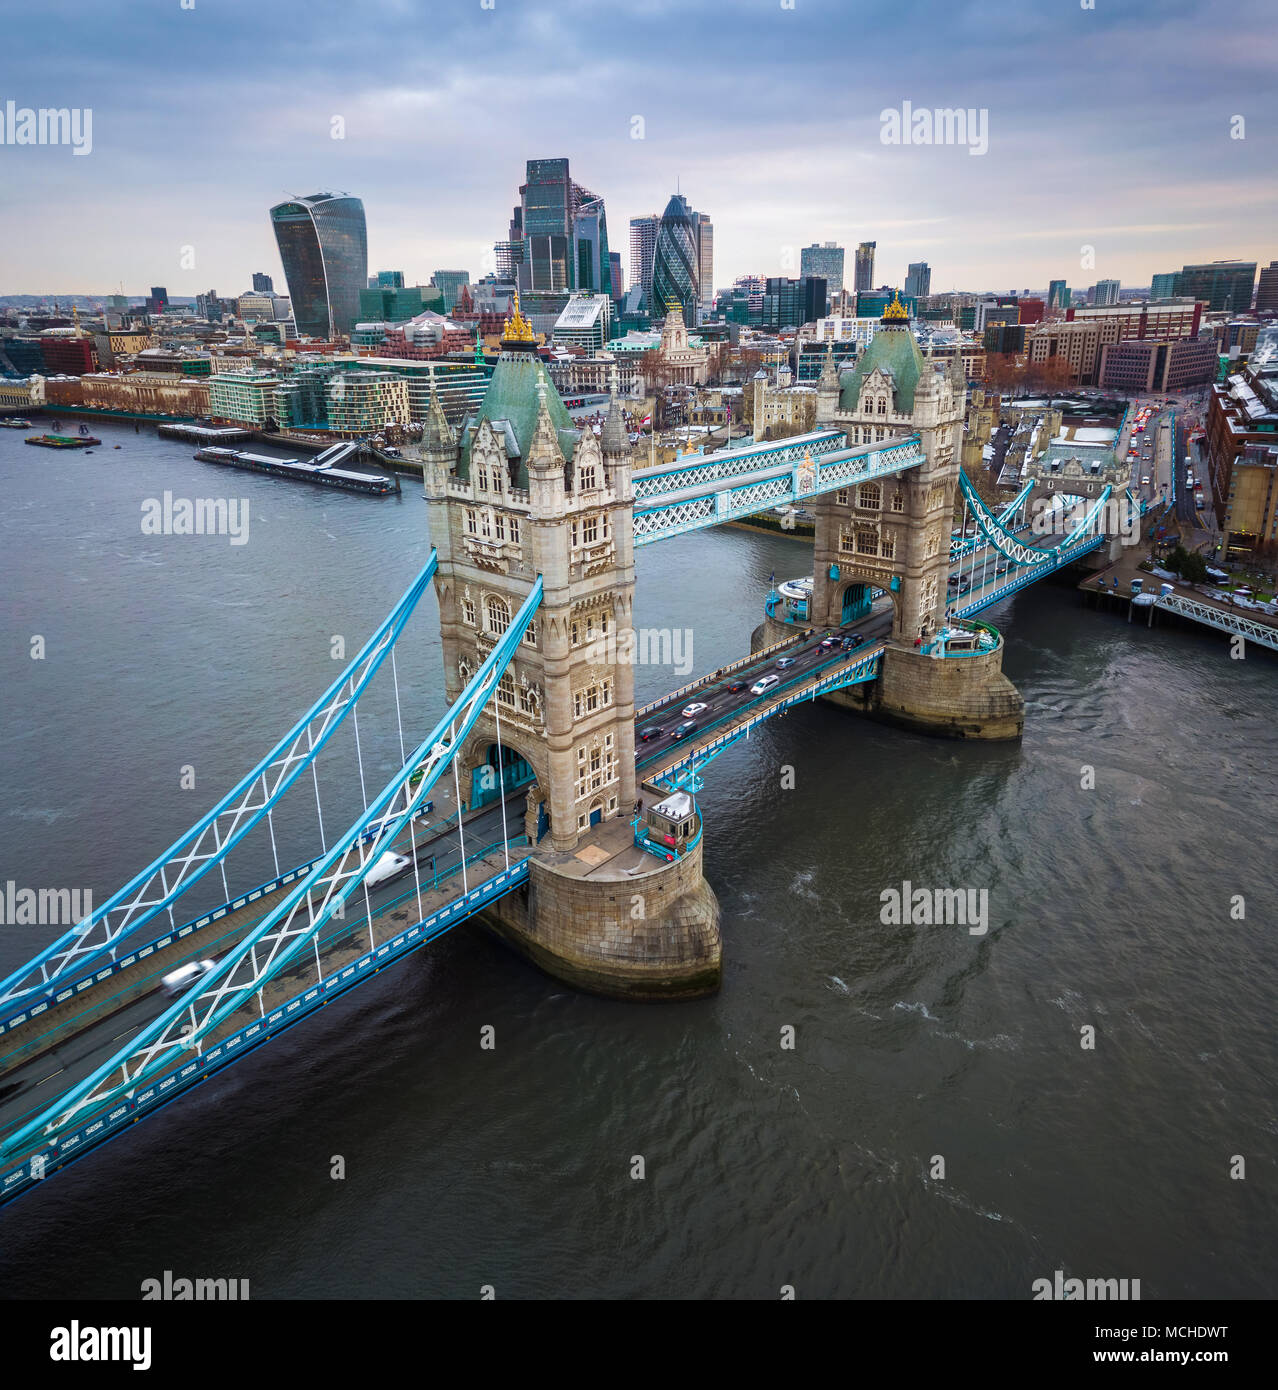 London, England - Luftbild panormaic Blick auf die berühmte Tower Bridge und Tower von London an einem bewölkten Morgen mit Wolkenkratzer des Financial Bank Distr Stockfoto